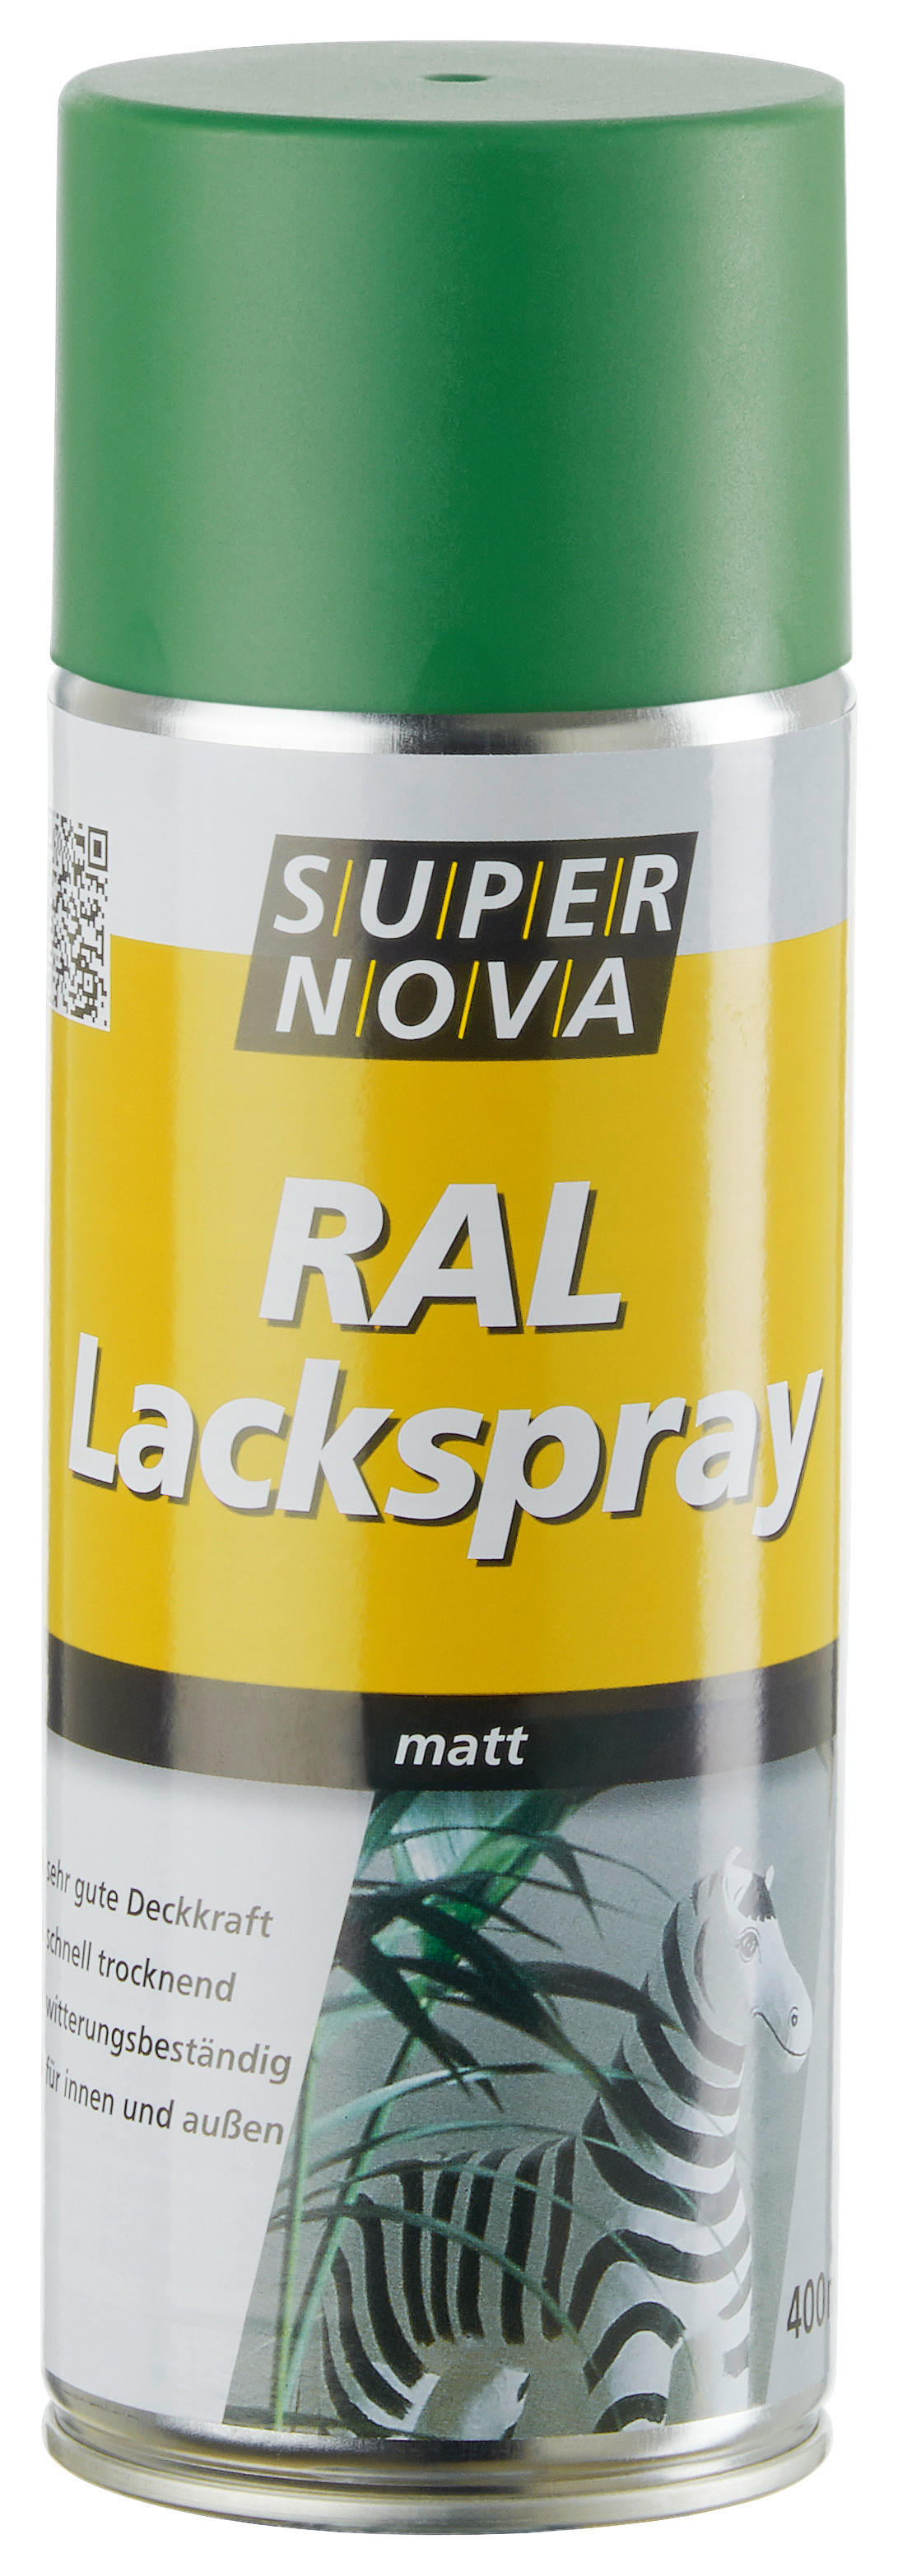 Super-Nova Lackspray laubgrün matt ca. 0,4 l Lackspray 400ml - laubgrün (400ml)